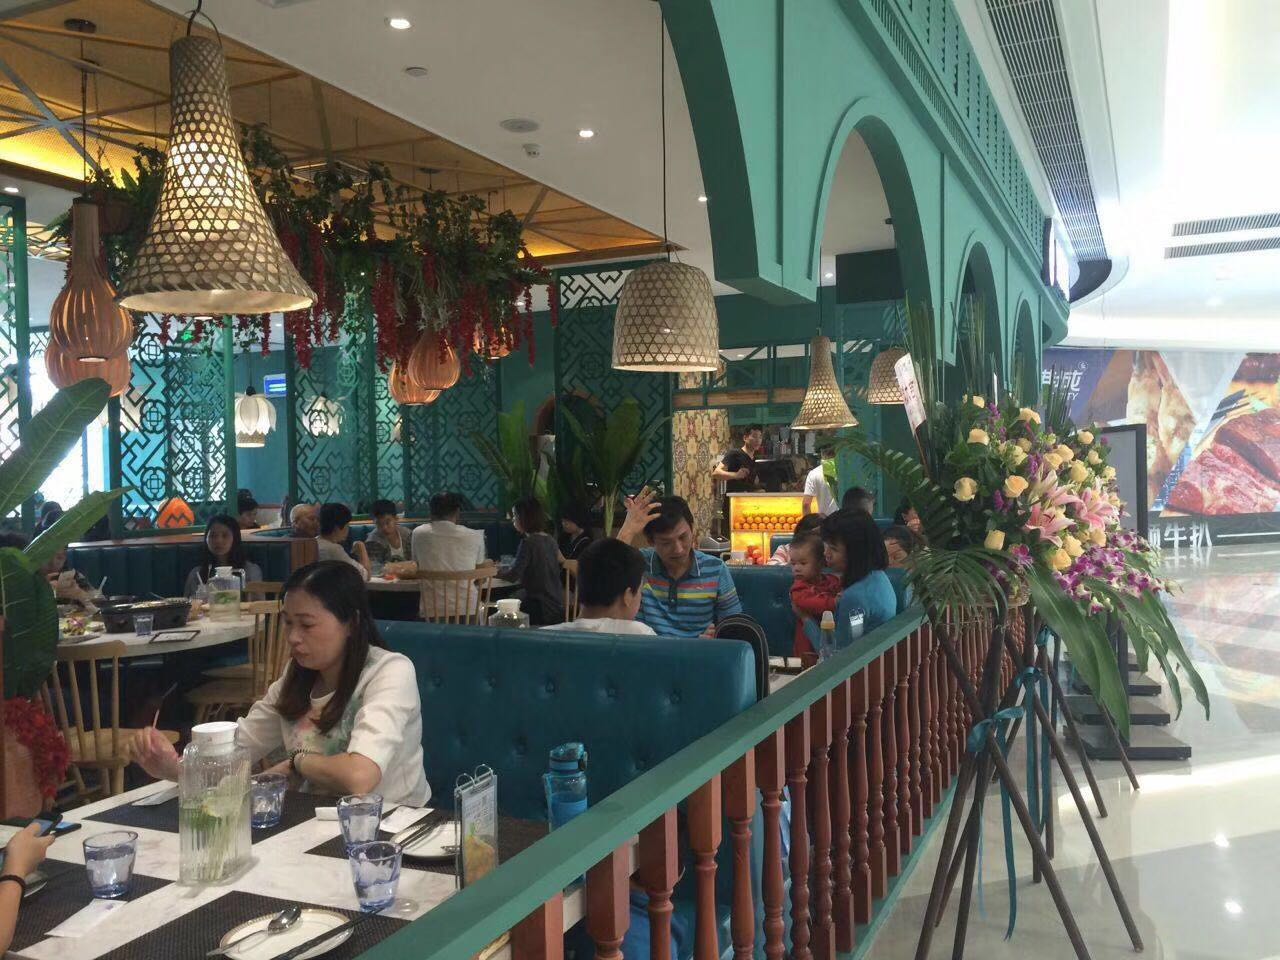 越南料理店卡座沙发桌椅由达芬家具厂标准化定制。